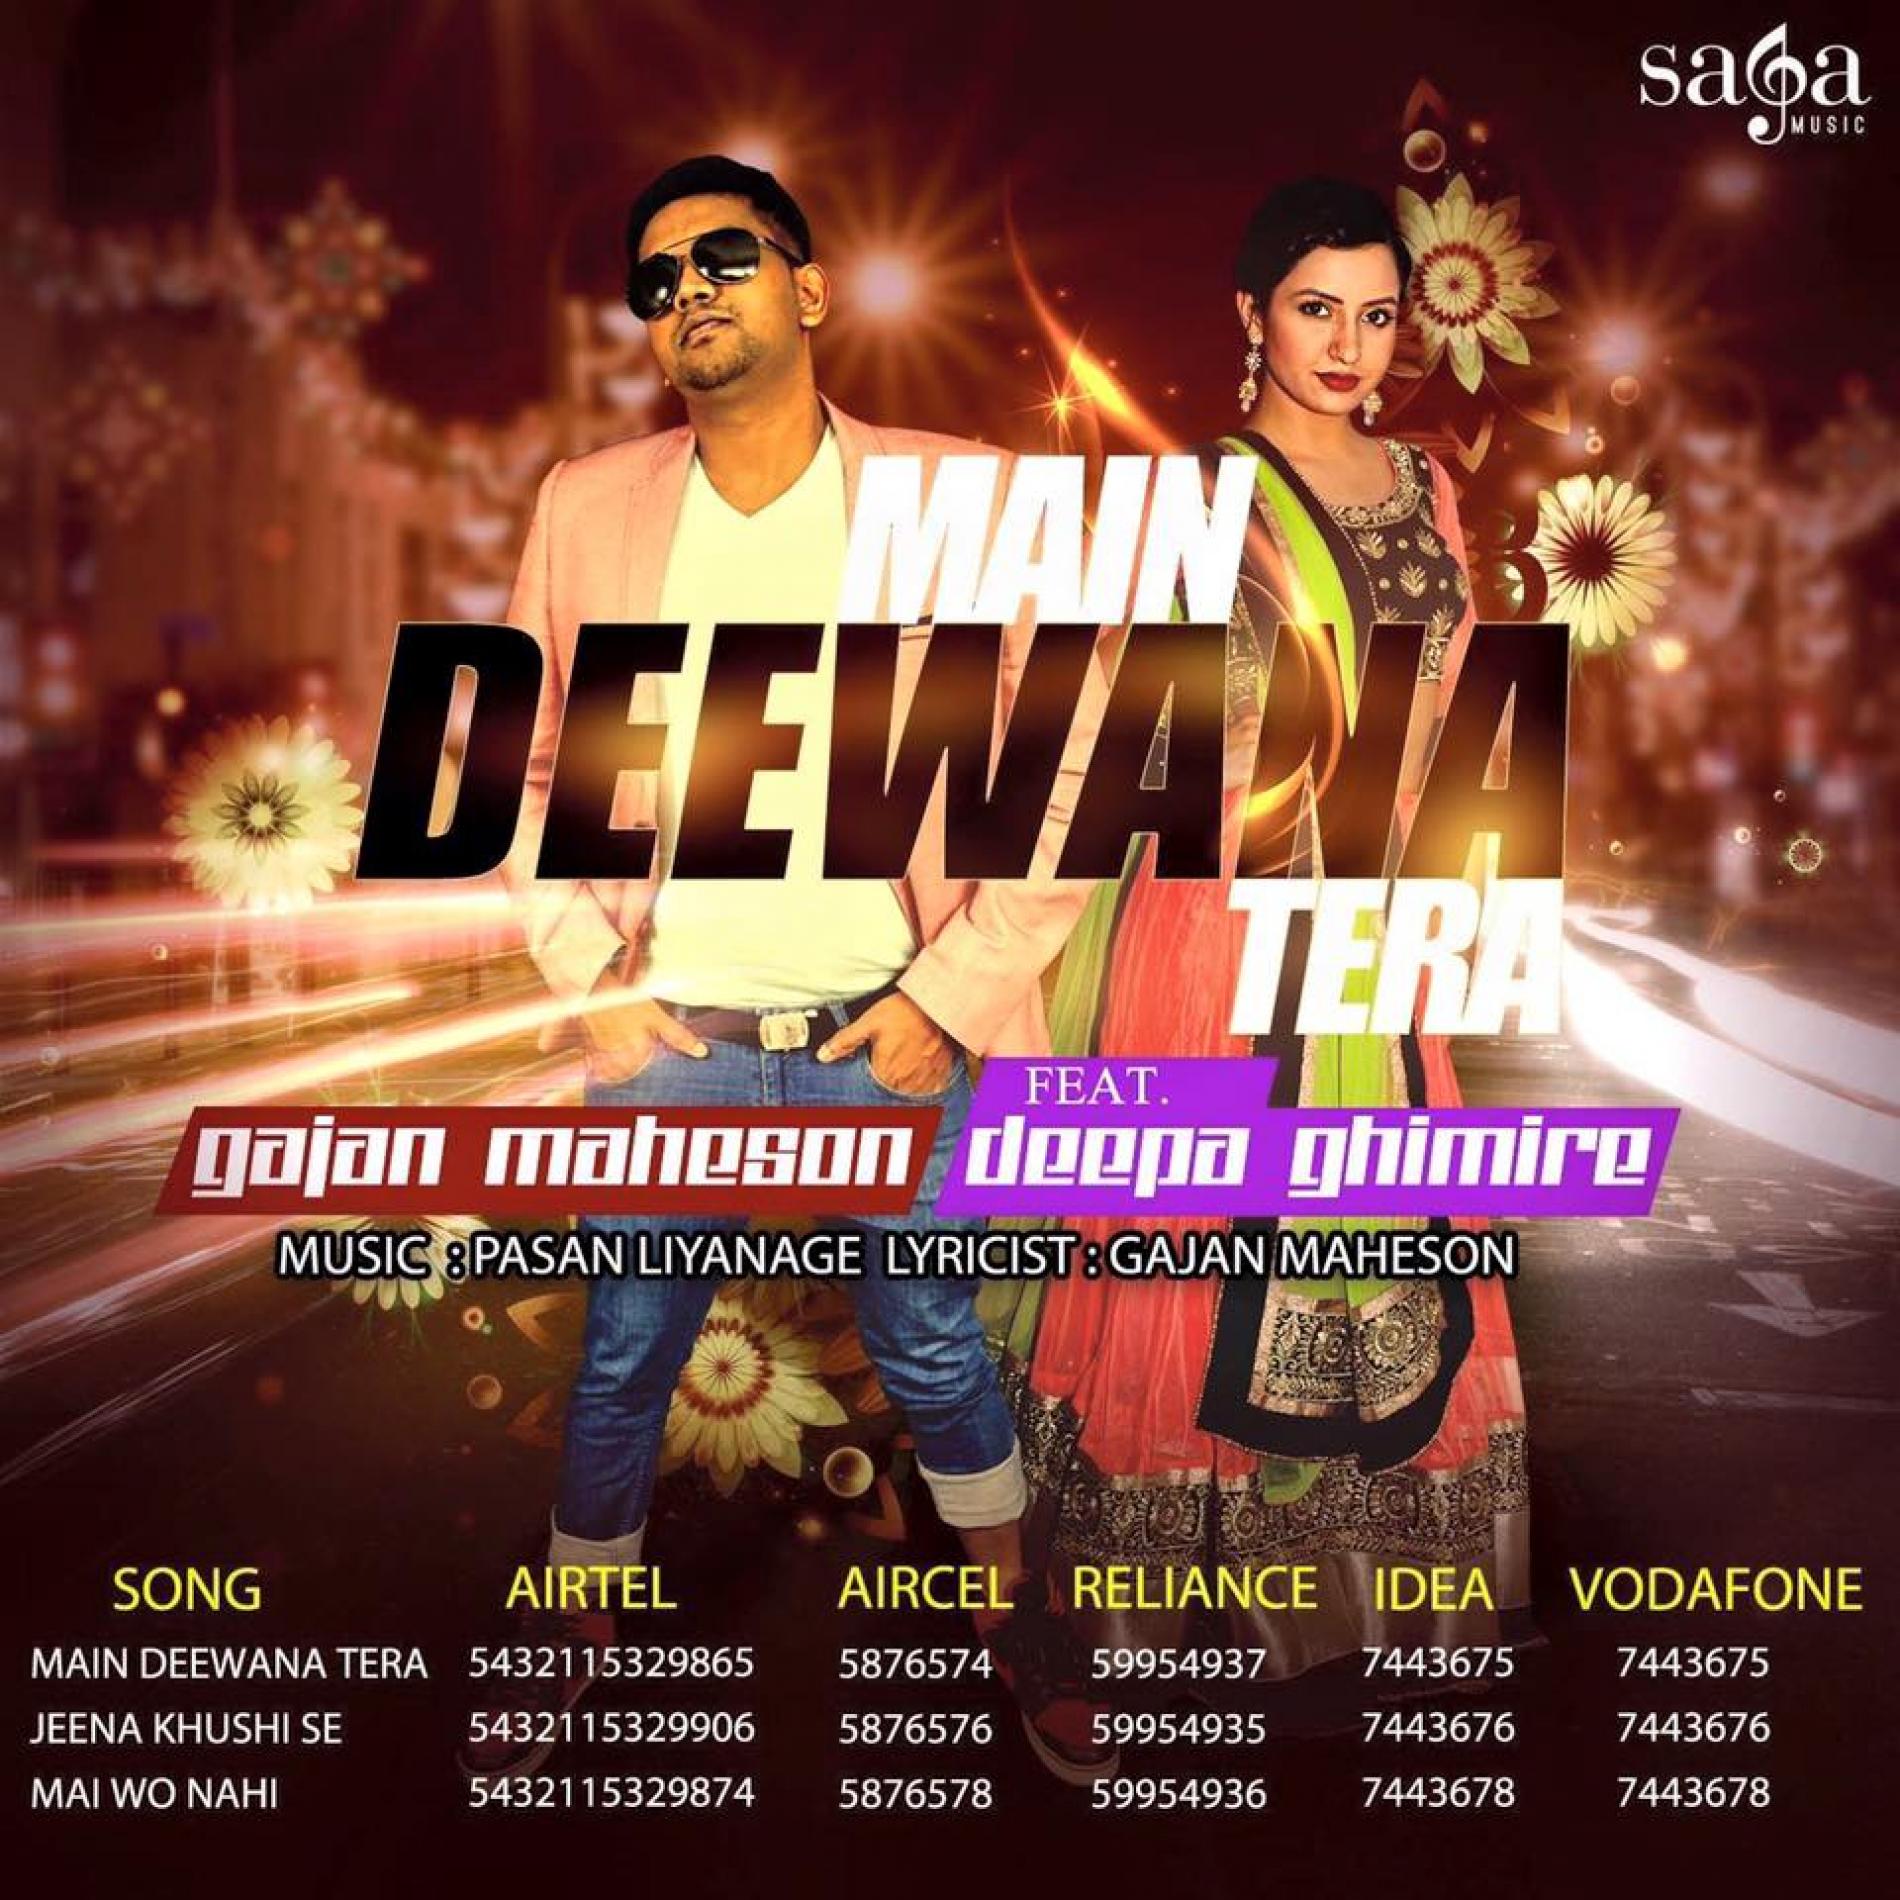 Gajan Maheson Ft Deepa Ghimire – Main Deewana Tera (Official Video)